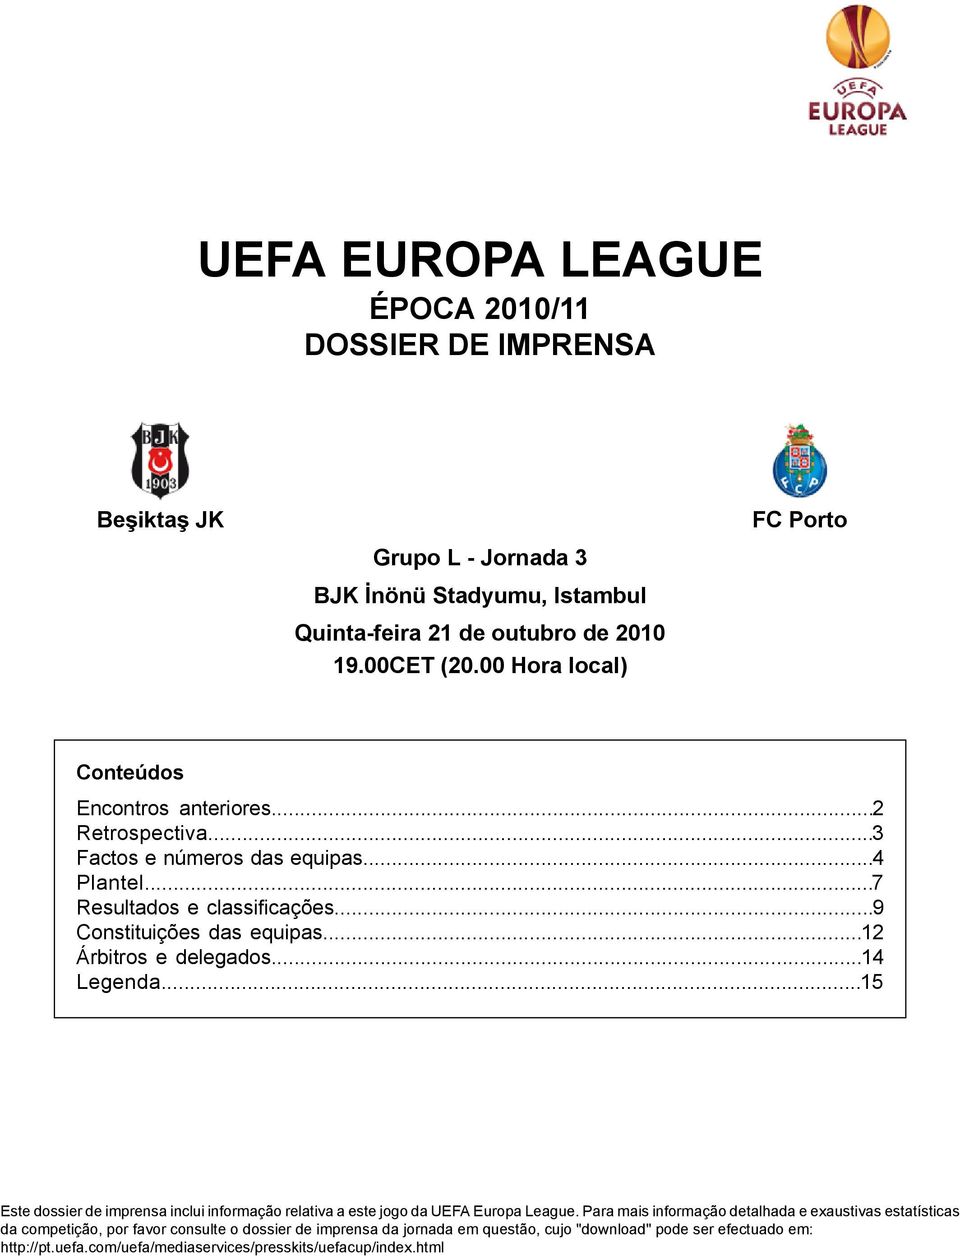 .. Este dossier de imprensa inclui informação relativa a este jogo da UEFA Europa League.